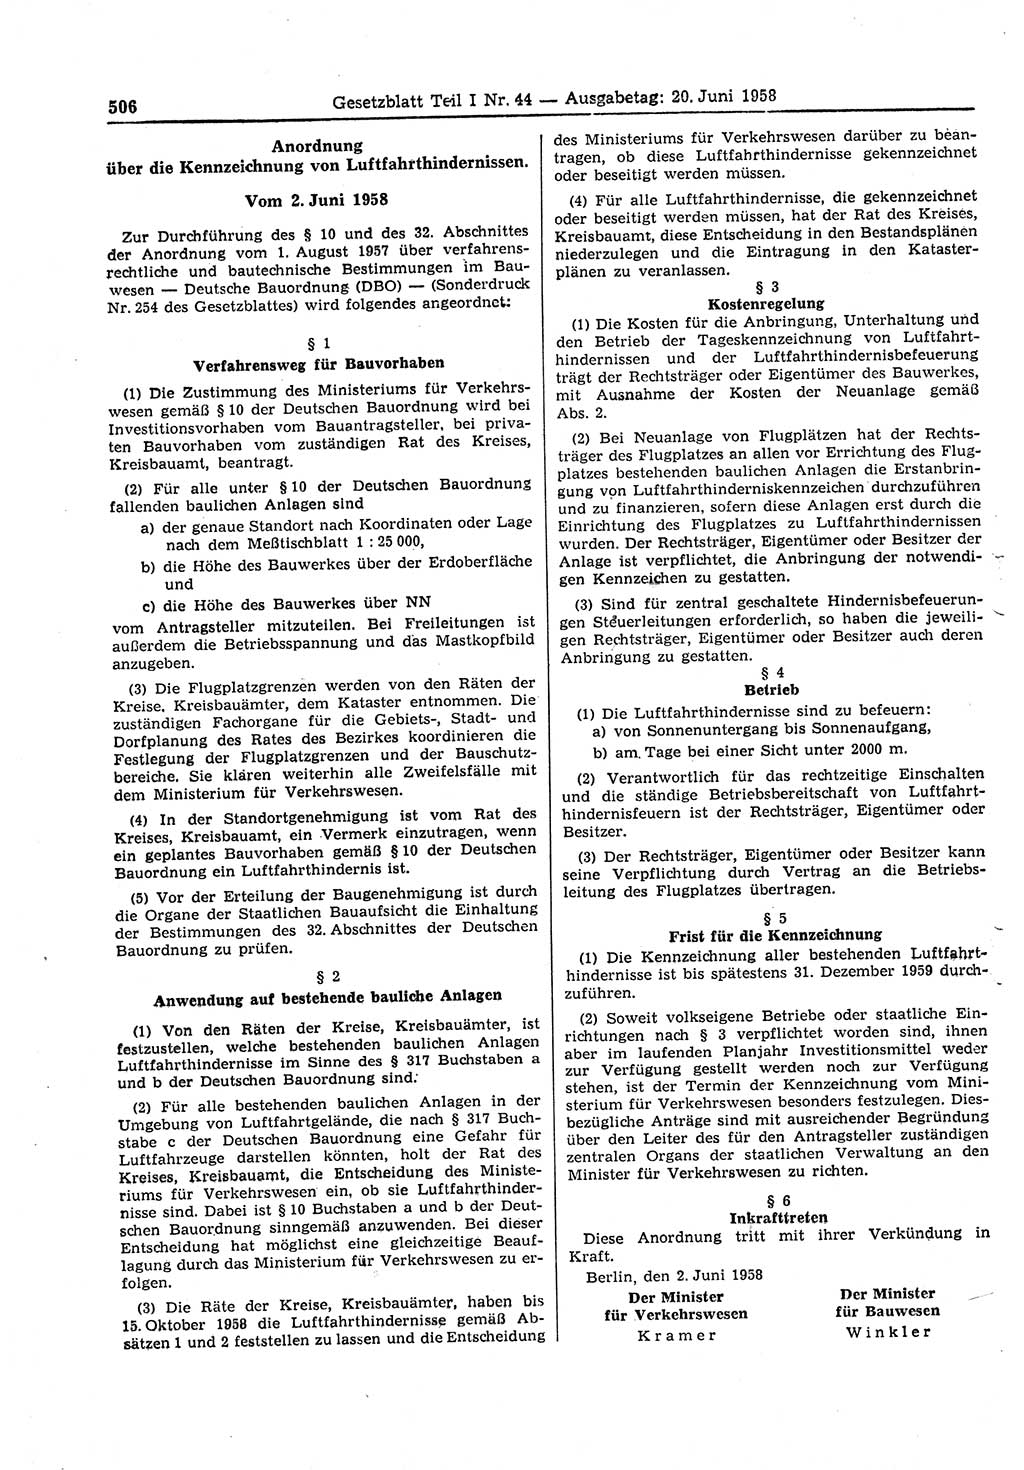 Gesetzblatt (GBl.) der Deutschen Demokratischen Republik (DDR) Teil Ⅰ 1958, Seite 506 (GBl. DDR Ⅰ 1958, S. 506)